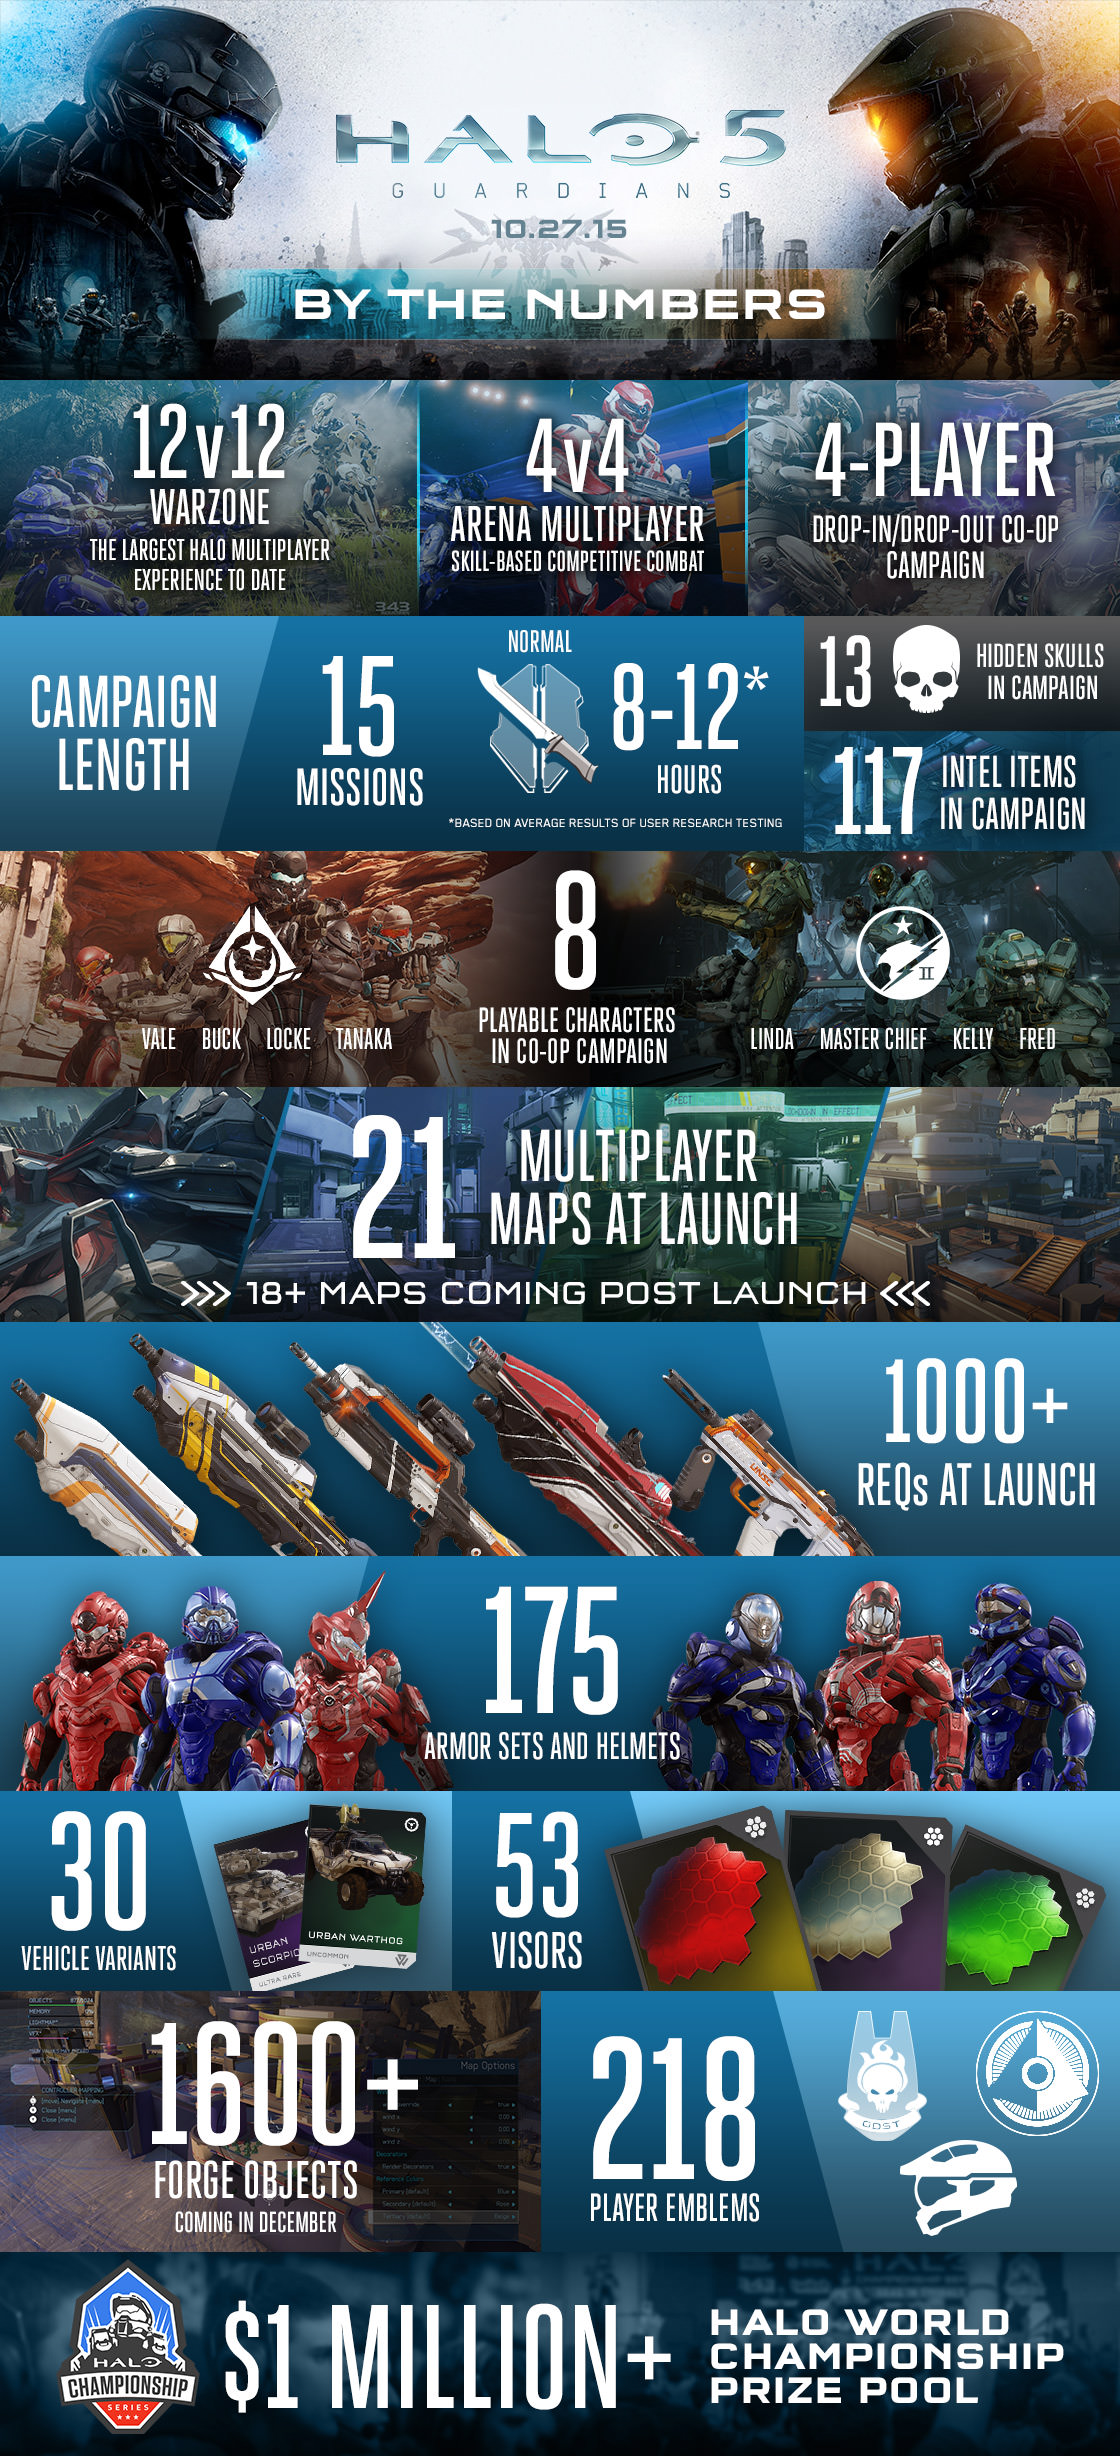 جدول فروش هفتگی انگلستان: صدرنشینی قدرتمند Halo 5 در اولین روزهای انتشار